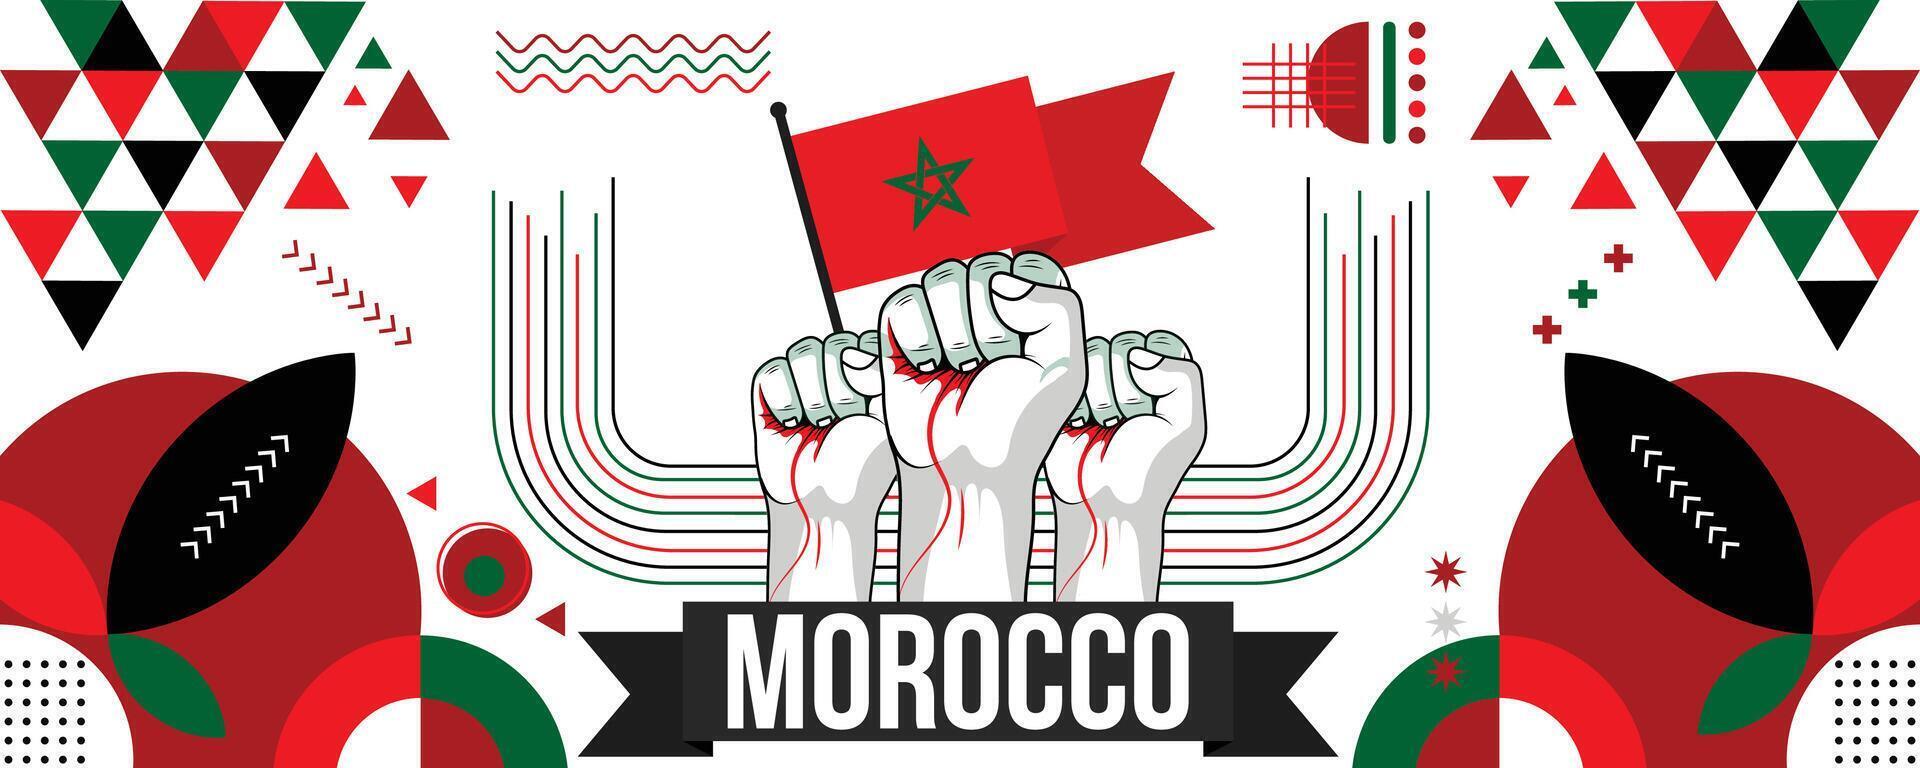 Marruecos nacional o independencia día bandera diseño para país celebracion. bandera de Marruecos moderno retro diseño resumen geométrico iconos vector ilustración